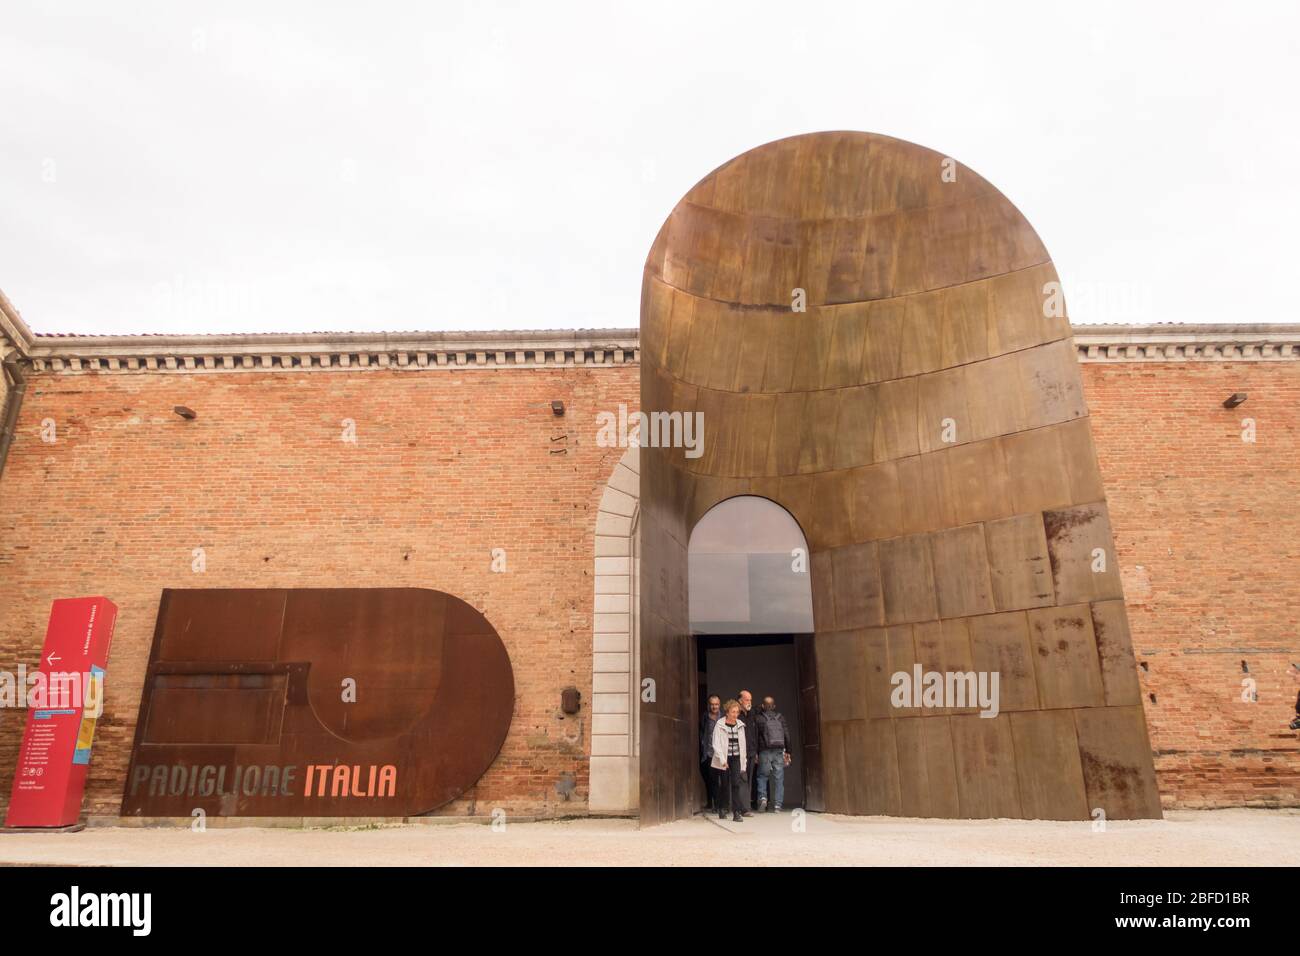 L'entrée du pavillon italien de la Biennale de Venise Banque D'Images